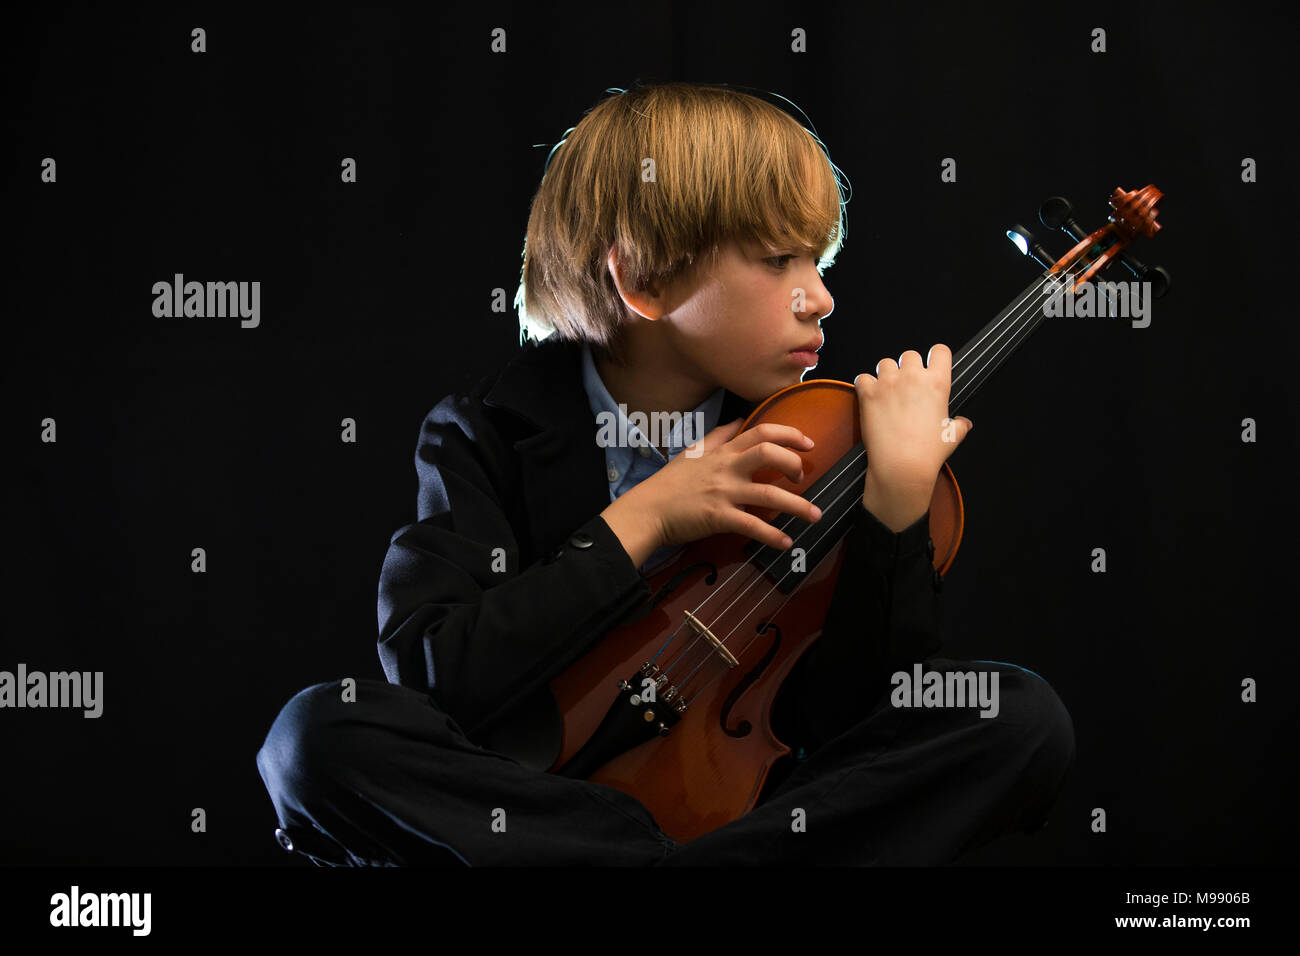 Kind spielen Geige, schwarzer Hintergrund, melancholisch, traurig,  nachdenklich, konzentriert Stockfotografie - Alamy